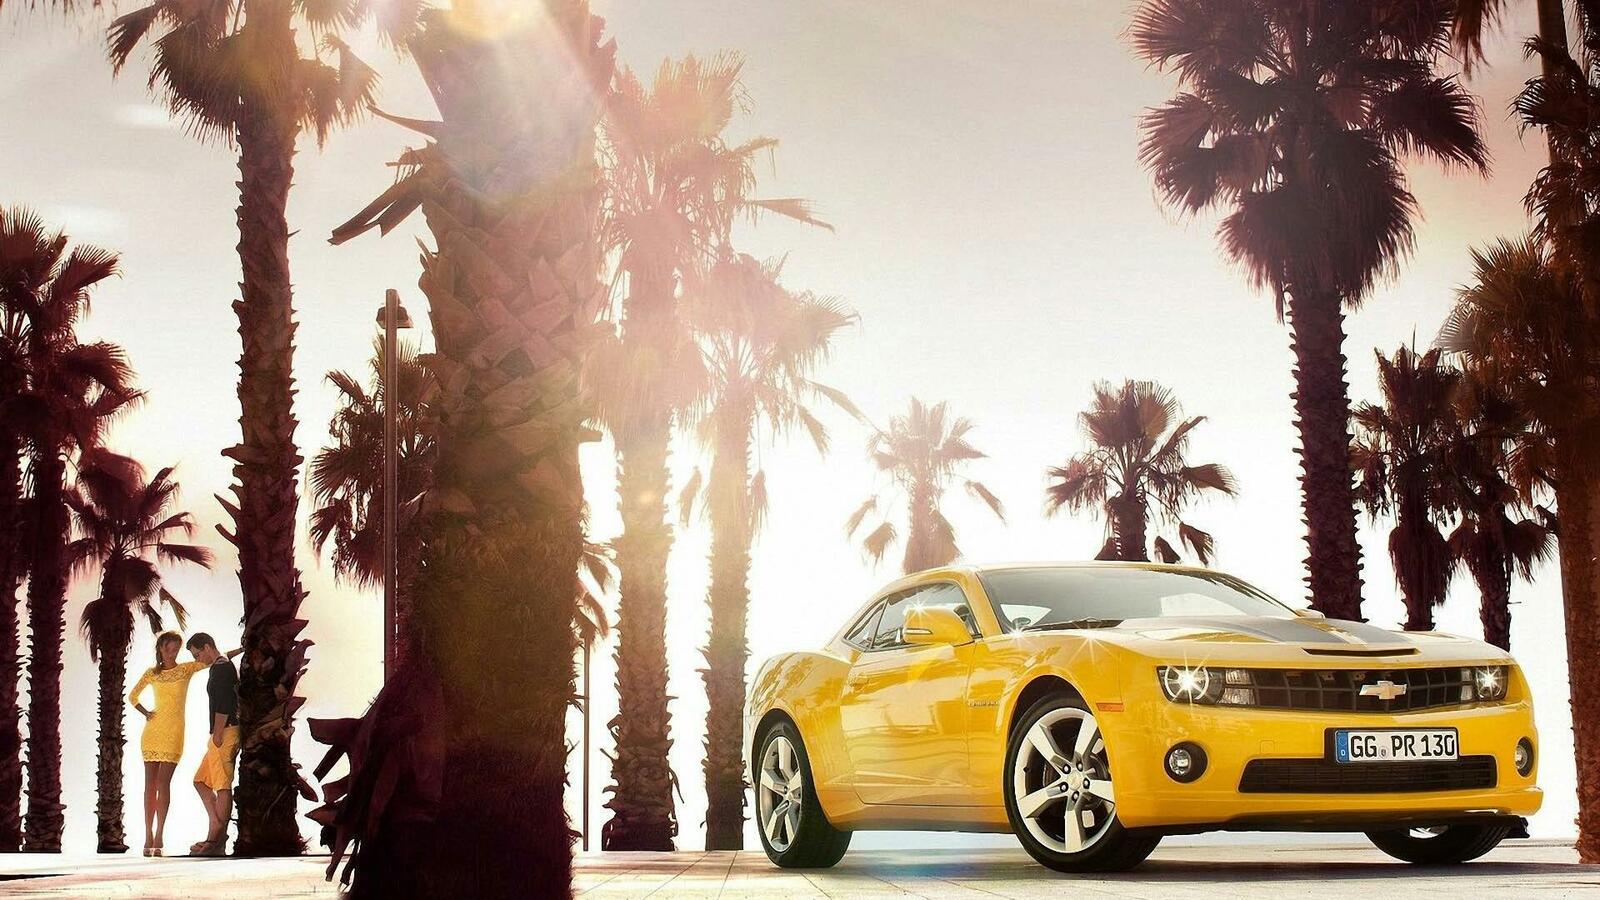 Бесплатное фото Chevrolet Сamaro желтого цвета стоит под пальмами